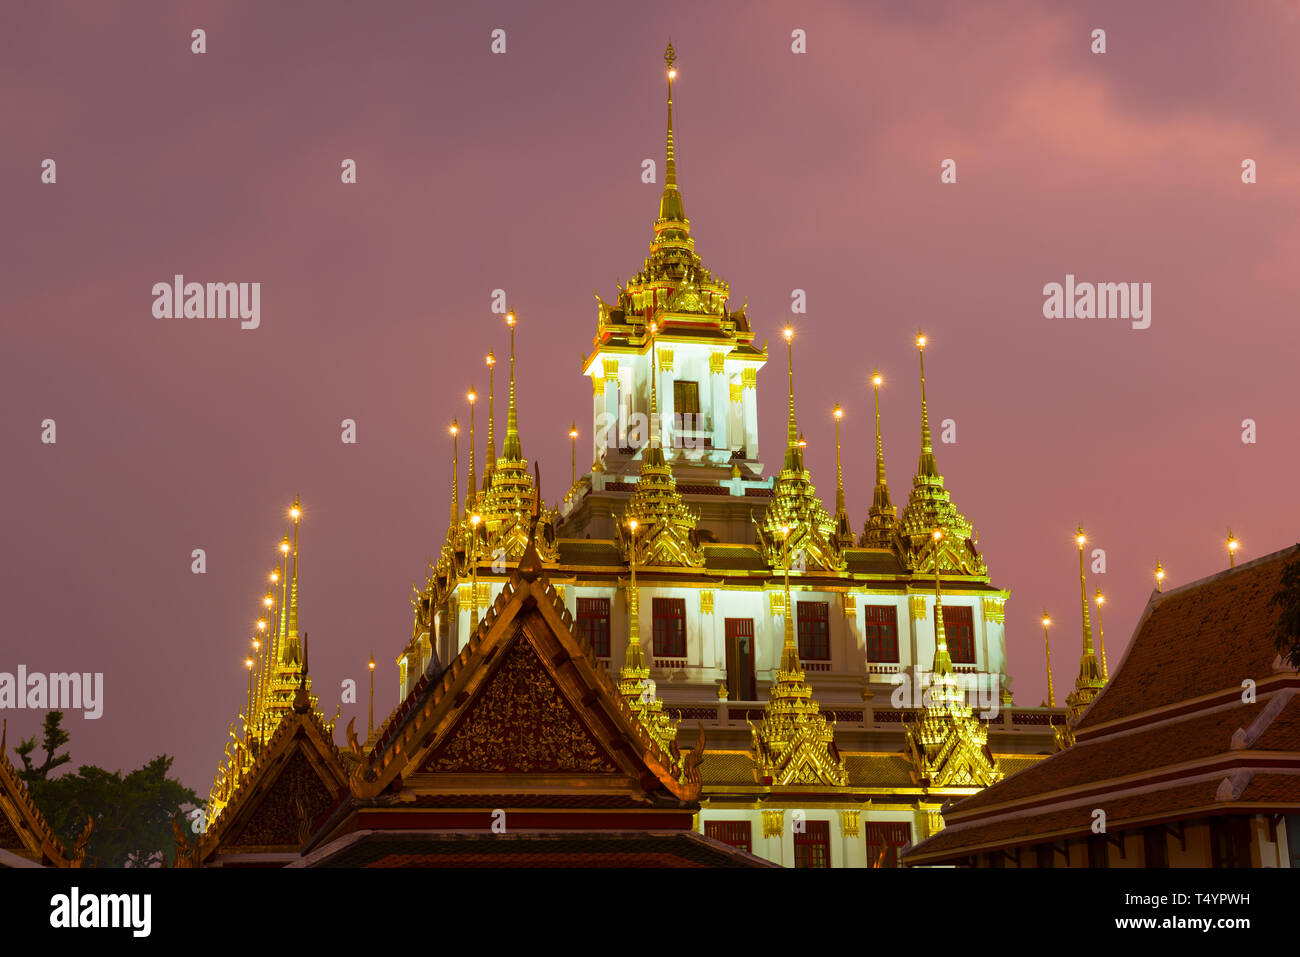 Die Oberseite des Chedi Loha Prasat in der Nacht beleuchtung. Buddhistische Tempel Wat Ratchanatdaram Woravihara, Bangkok Stockfoto